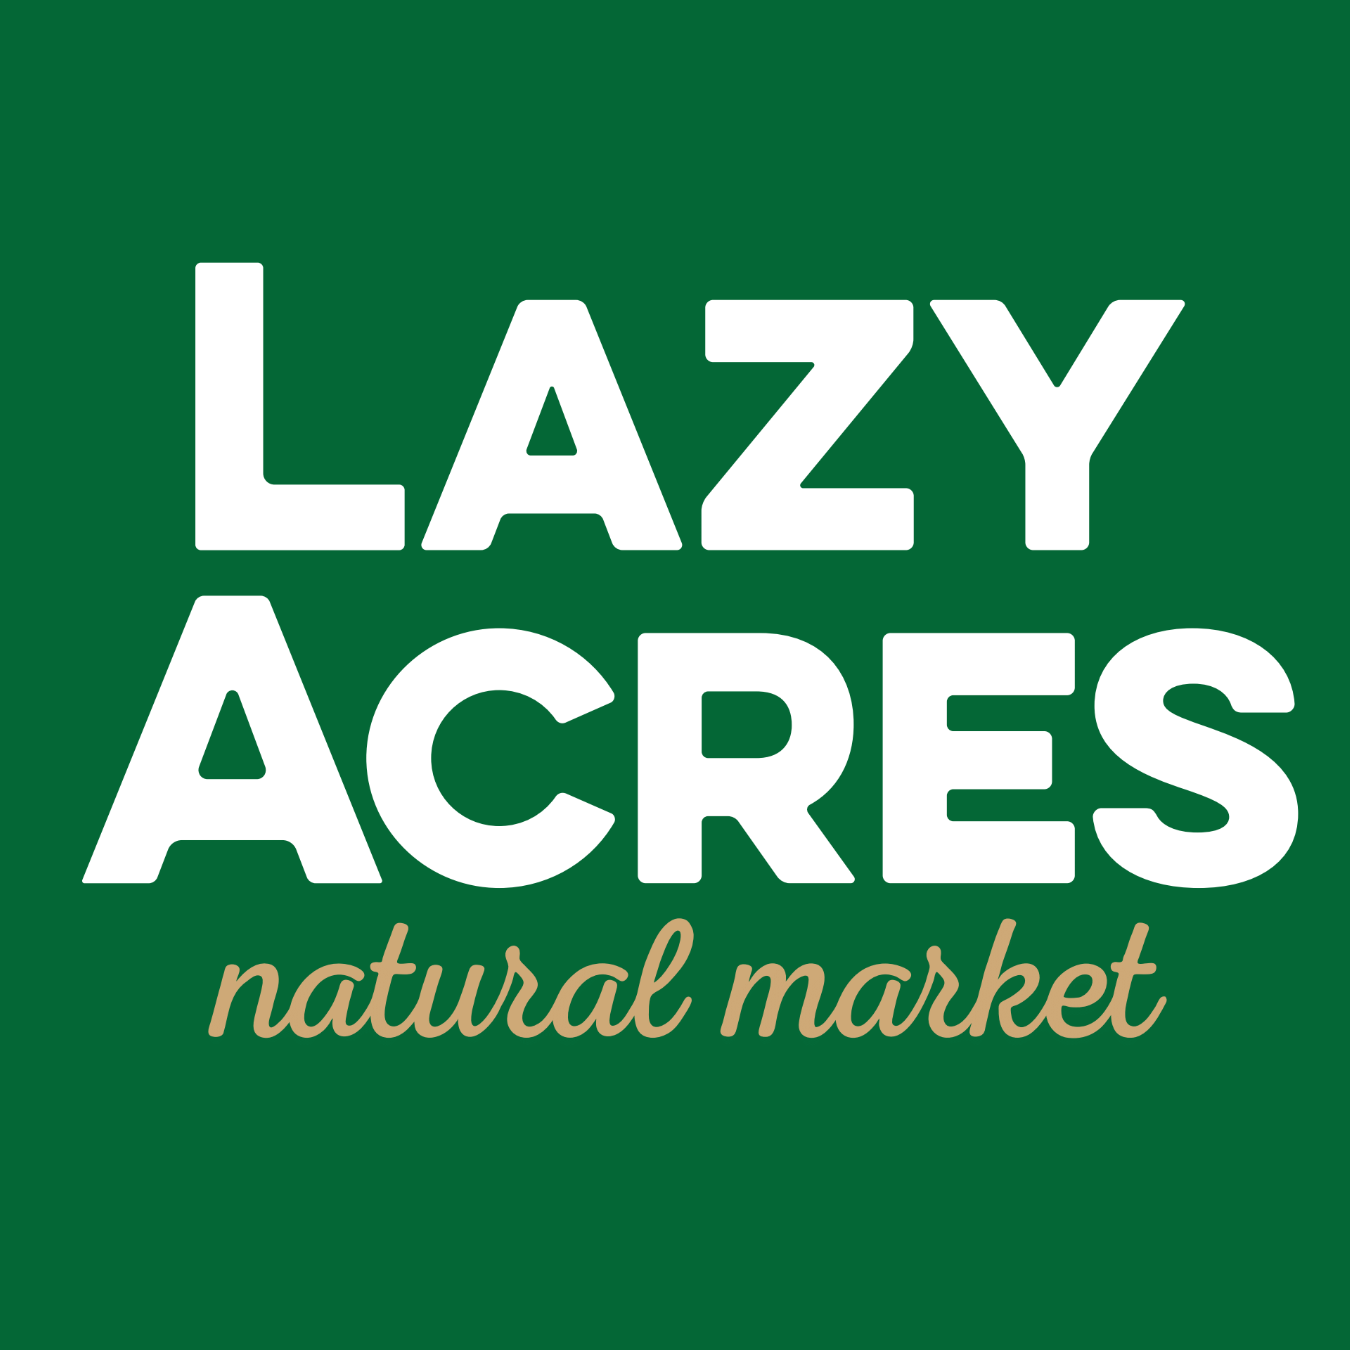 Company logo of Lazy Acres